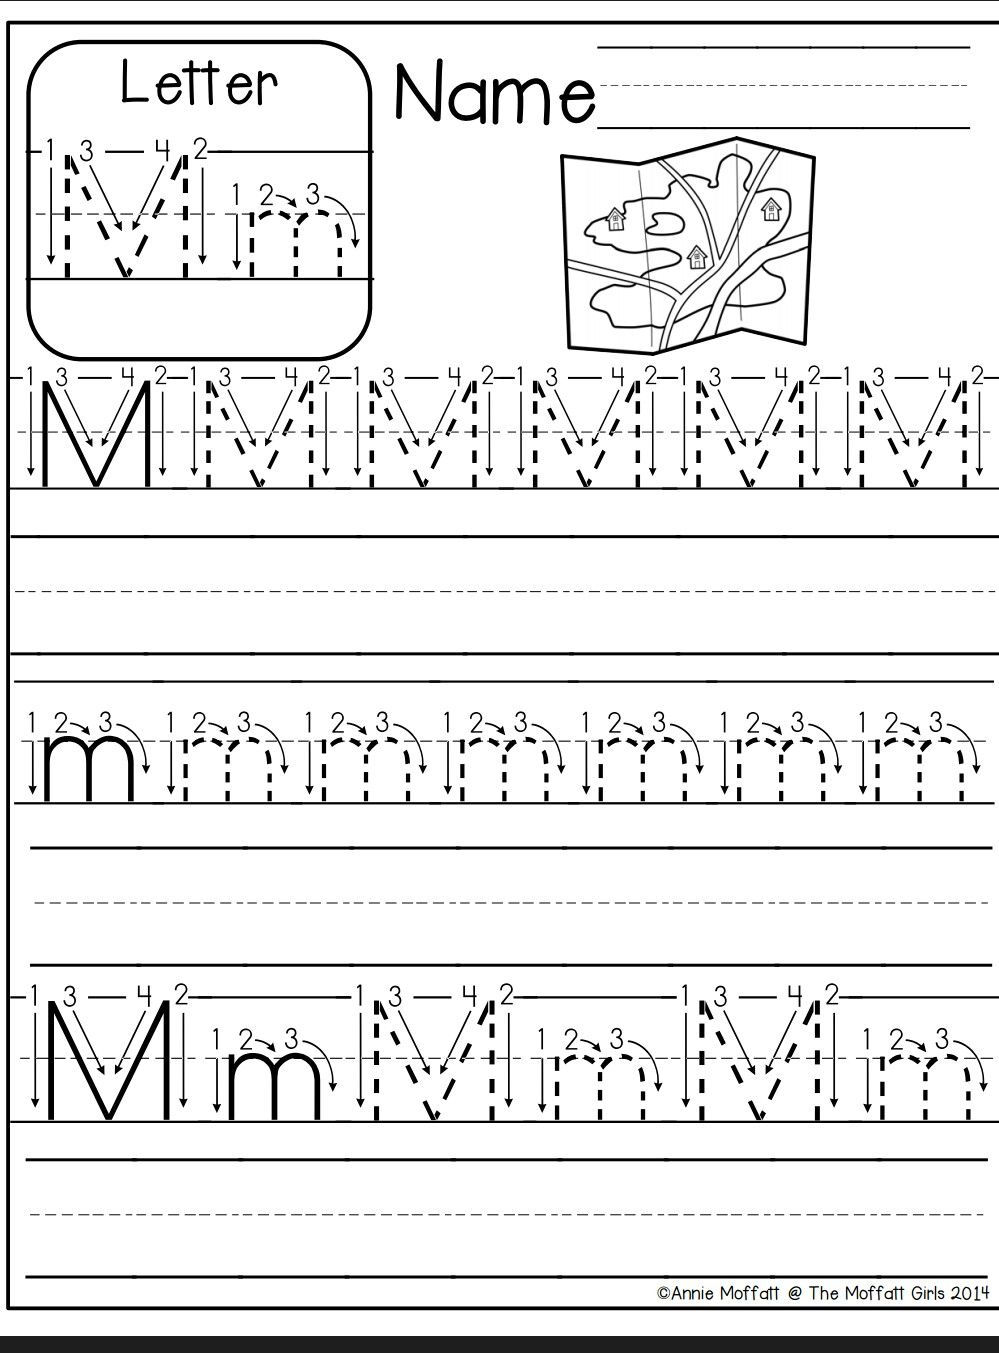 Letter M Worksheet | Preschool Writing, Letter M Worksheets within Tracing Letter M Worksheets